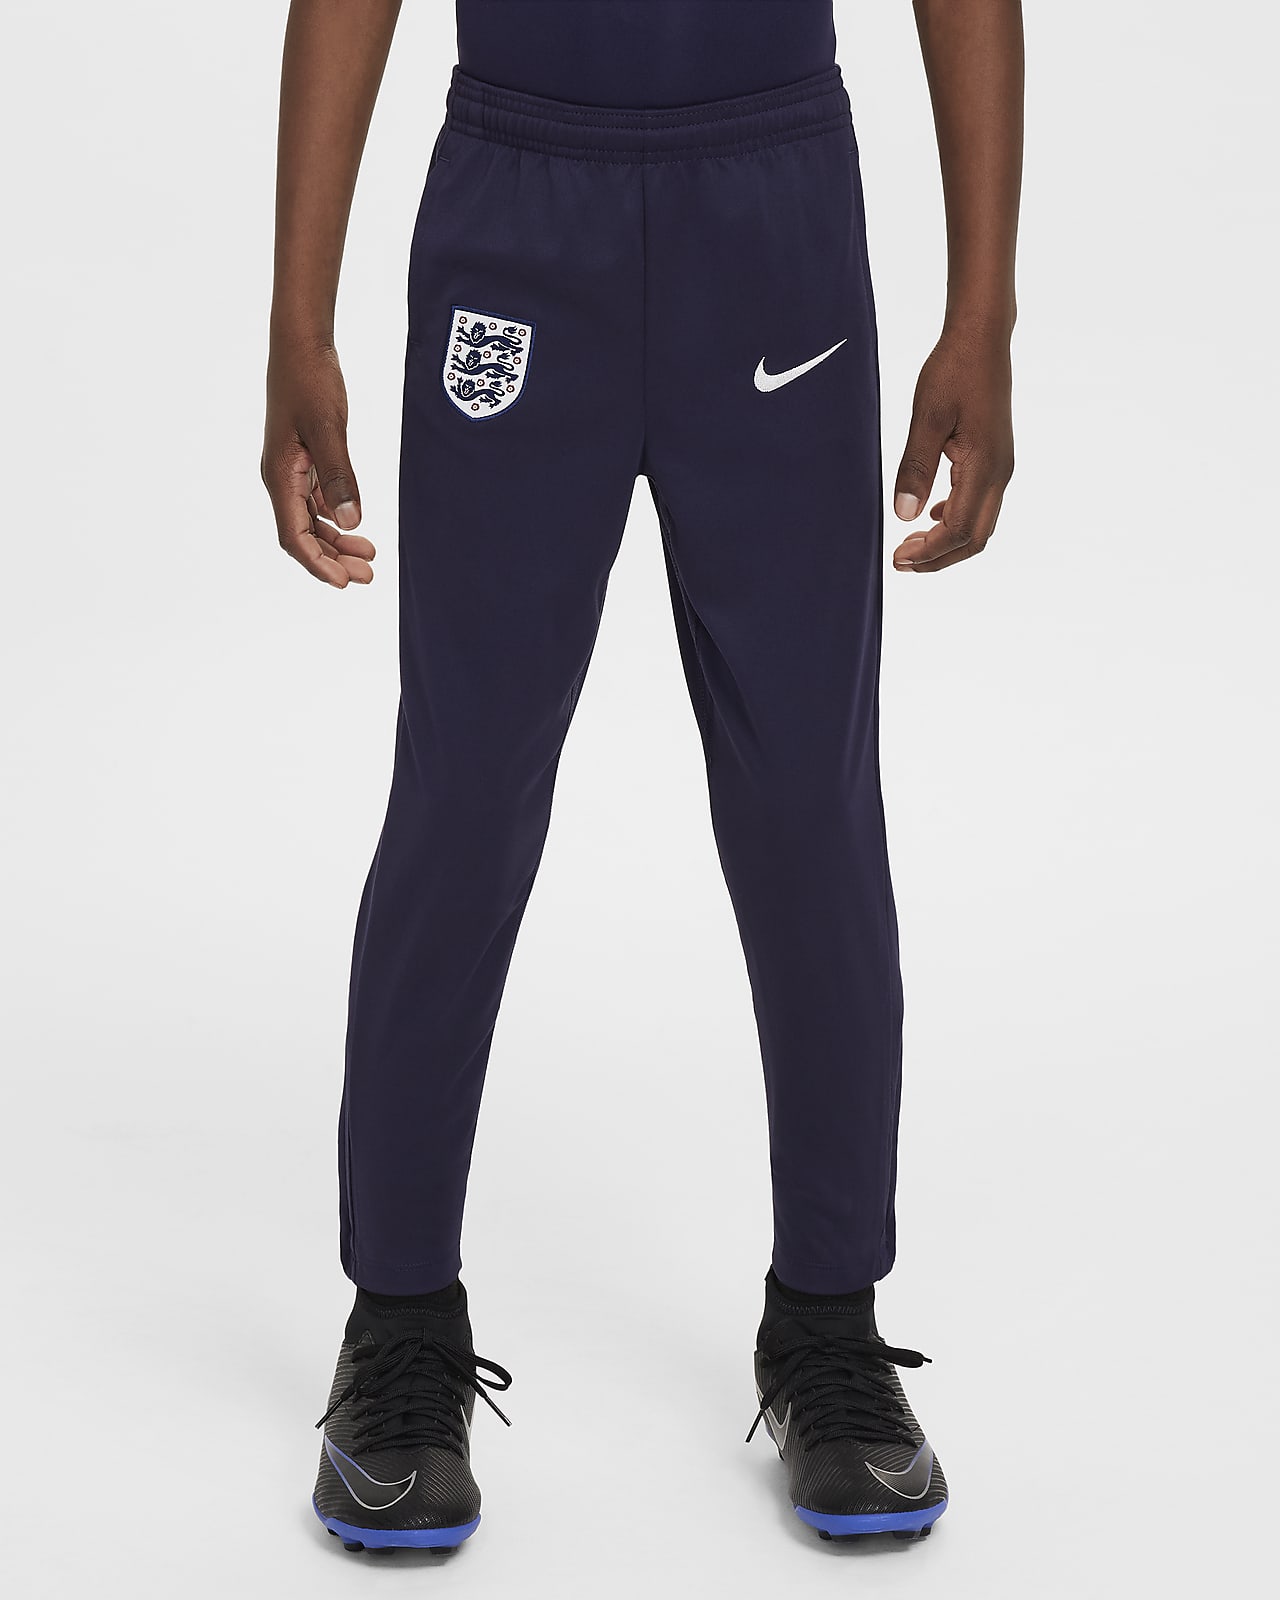 England Academy Pro Nike Dri-FIT-Fußballhose aus Strick für jüngere Kinder